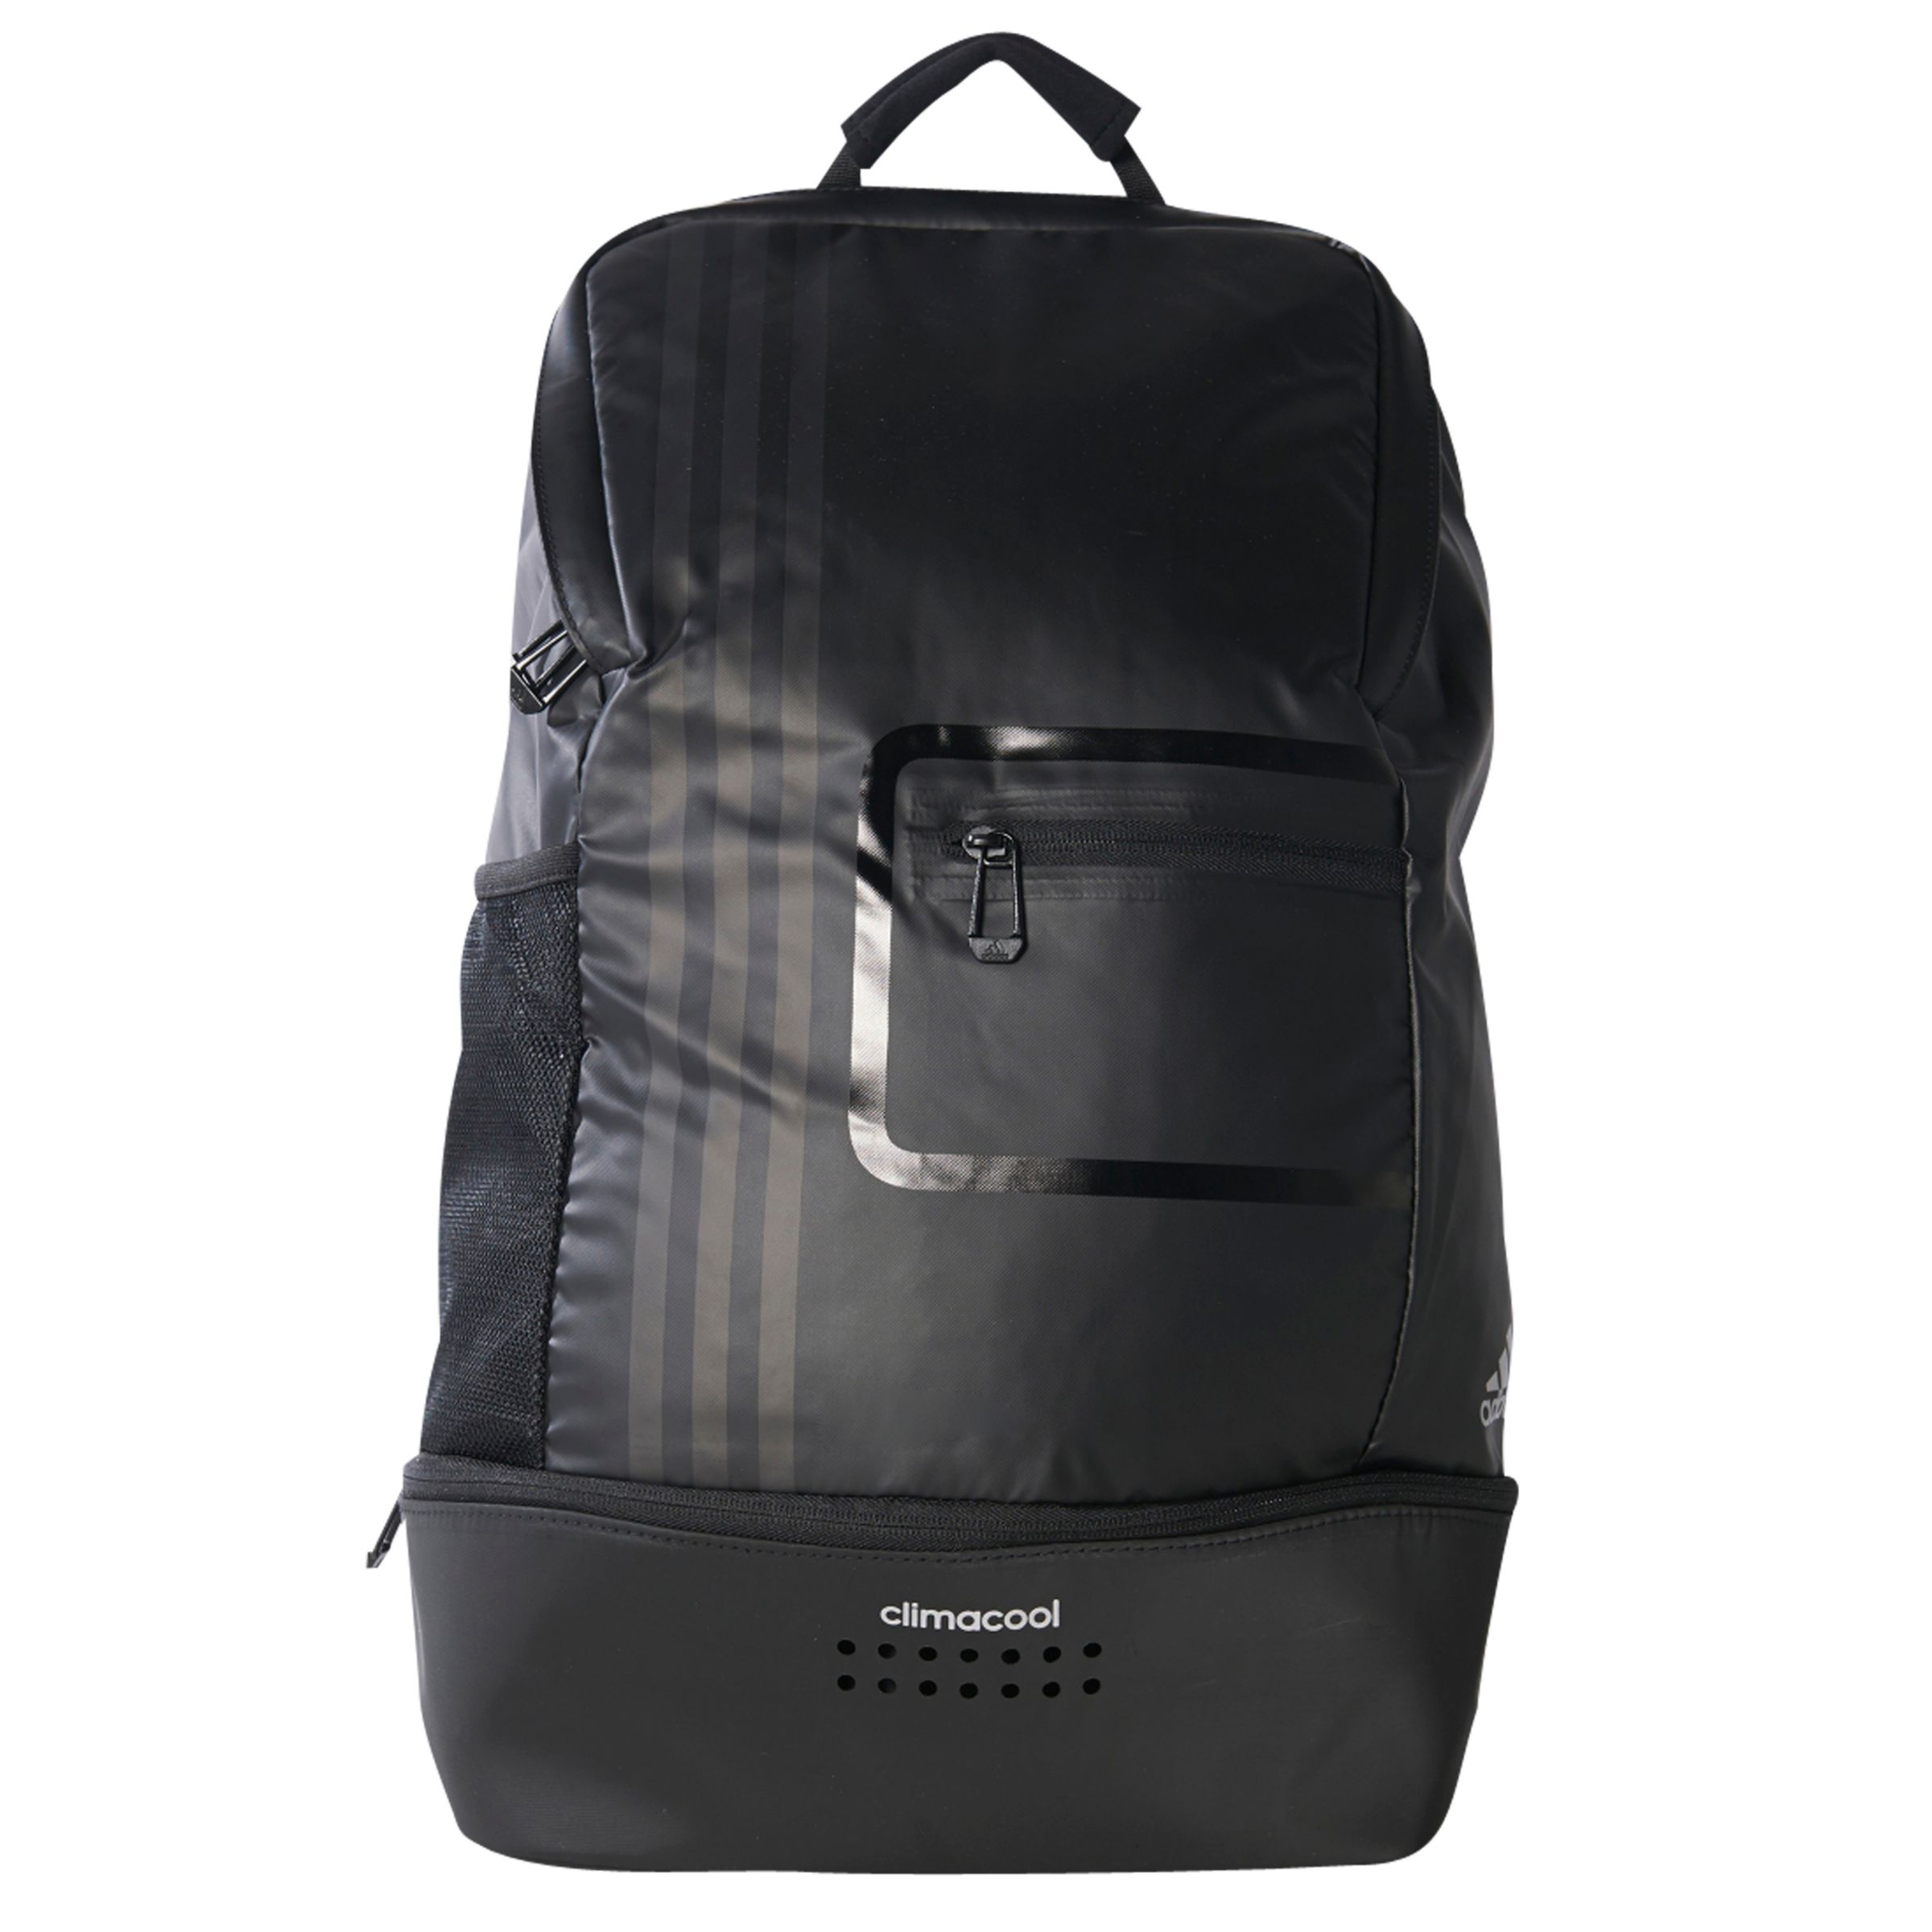 Adidas Climacool Backpack, Black/Matte 